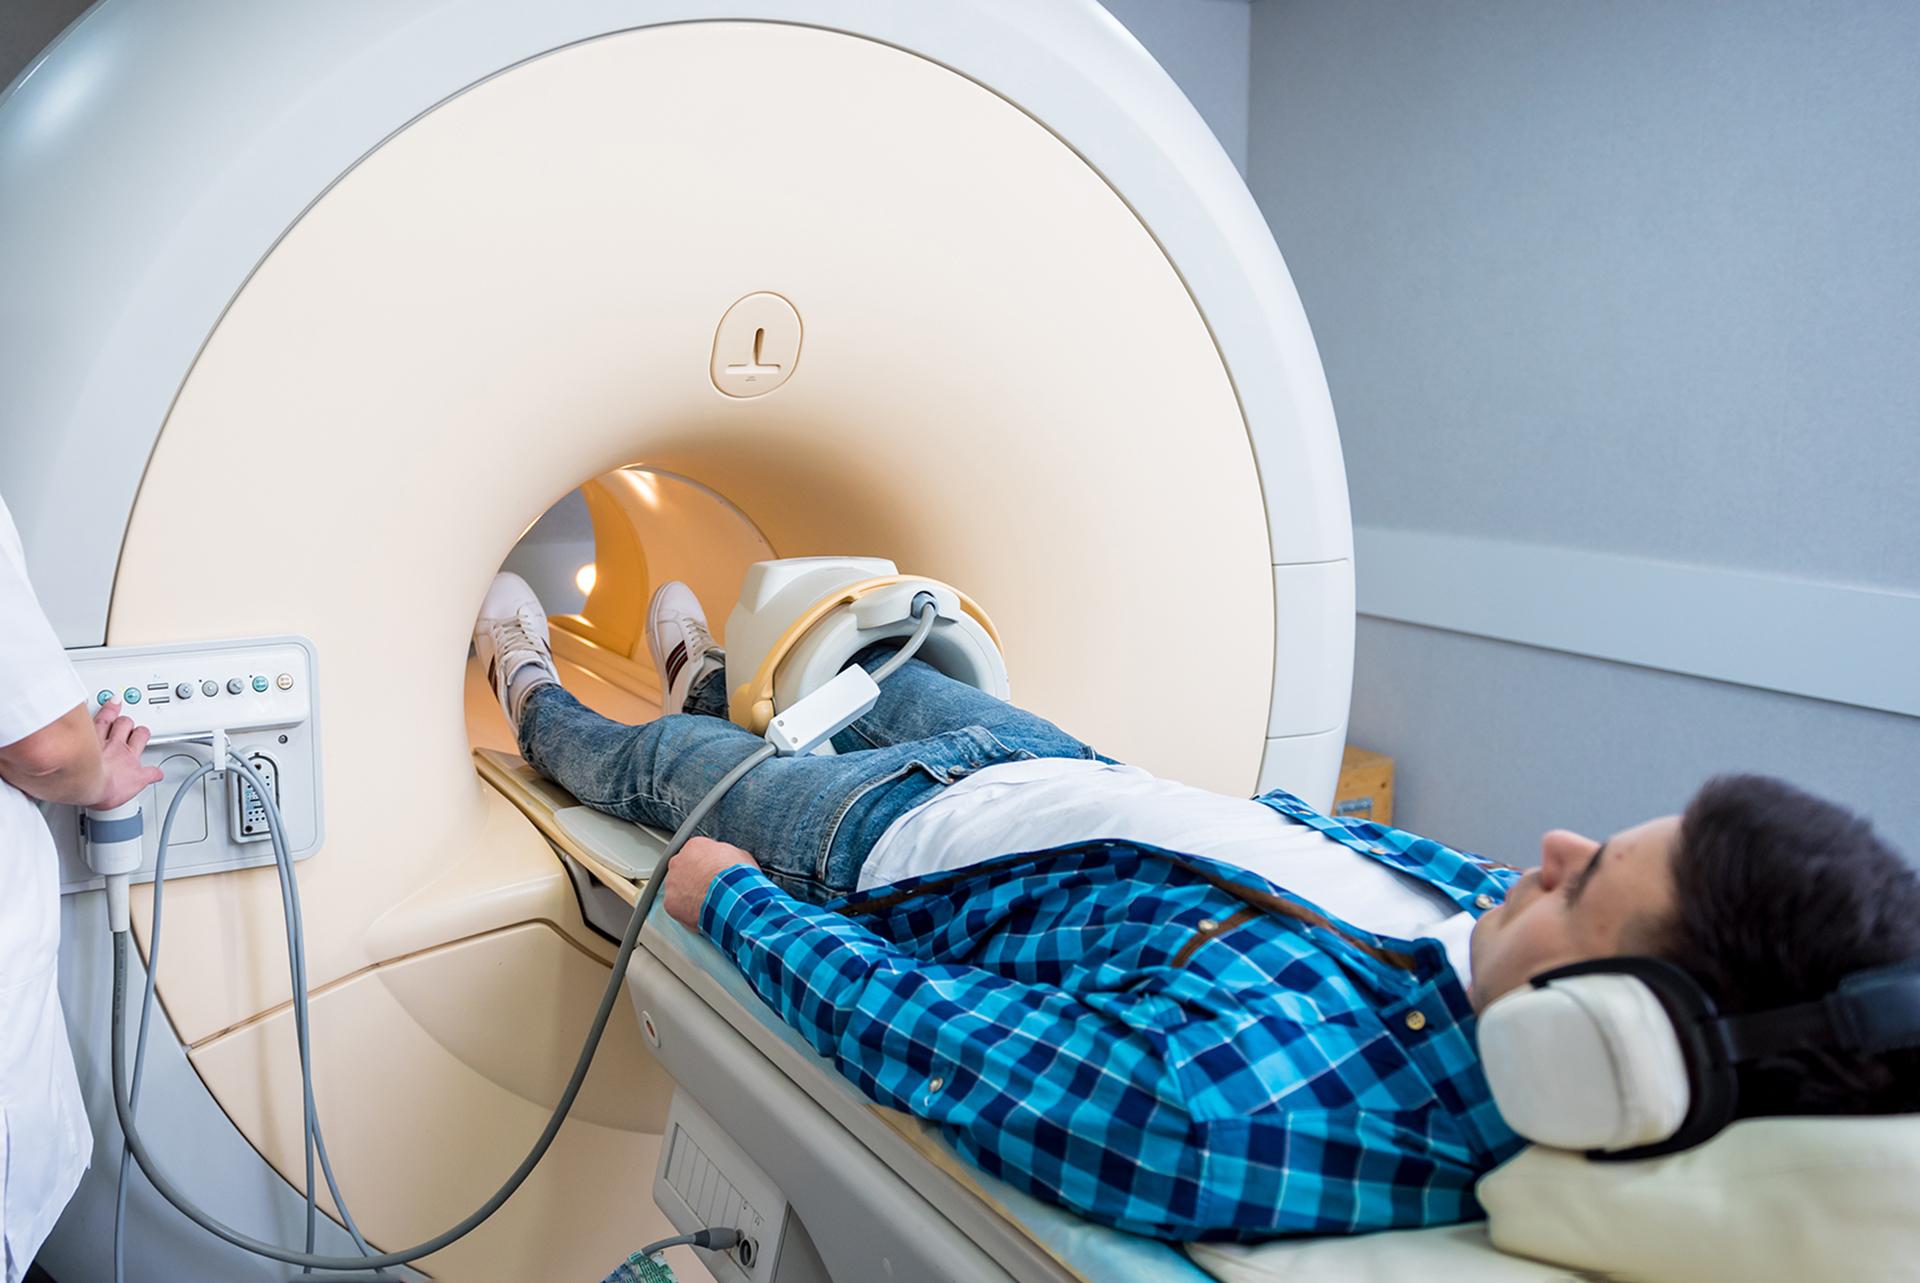 एमआरआय स्कॅन म्हणजे काय आणि त्याचे साइड इफेक्ट्स काय आहेत? महत्वाचे MRI उपयोग